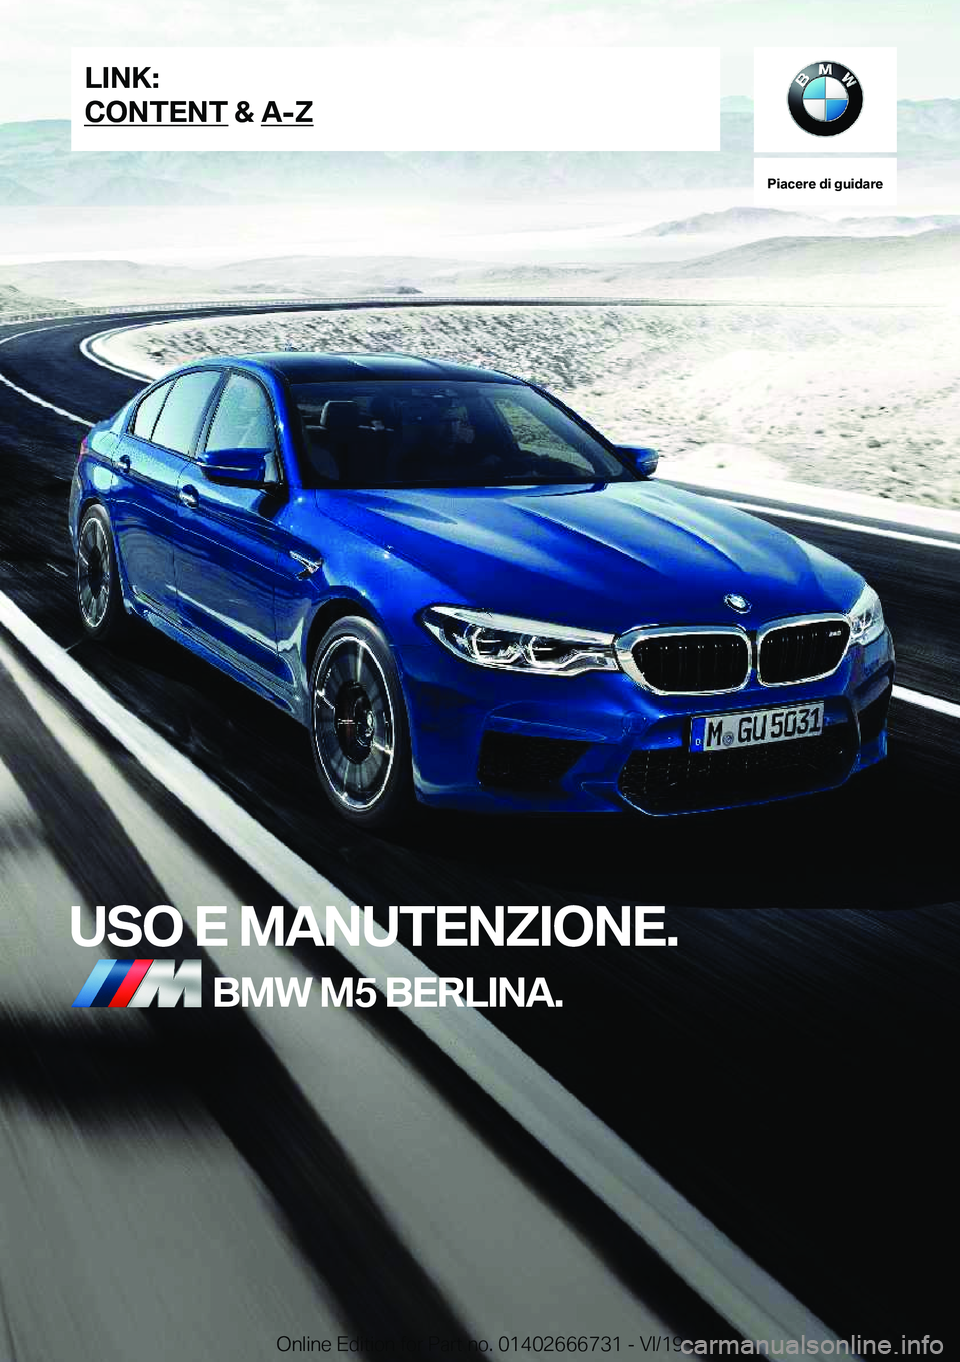 BMW M5 2020  Libretti Di Uso E manutenzione (in Italian) �P�i�a�c�e�r�e��d�i��g�u�i�d�a�r�e
�U�S�O��E��M�A�N�U�T�E�N�Z�I�O�N�E�.�B�M�W��M�5��B�E�R�L�I�N�A�.�L�I�N�K�:
�C�O�N�T�E�N�T��&��A�-�Z�O�n�l�i�n�e��E�d�i�t�i�o�n��f�o�r��P�a�r�t��n�o�.��0